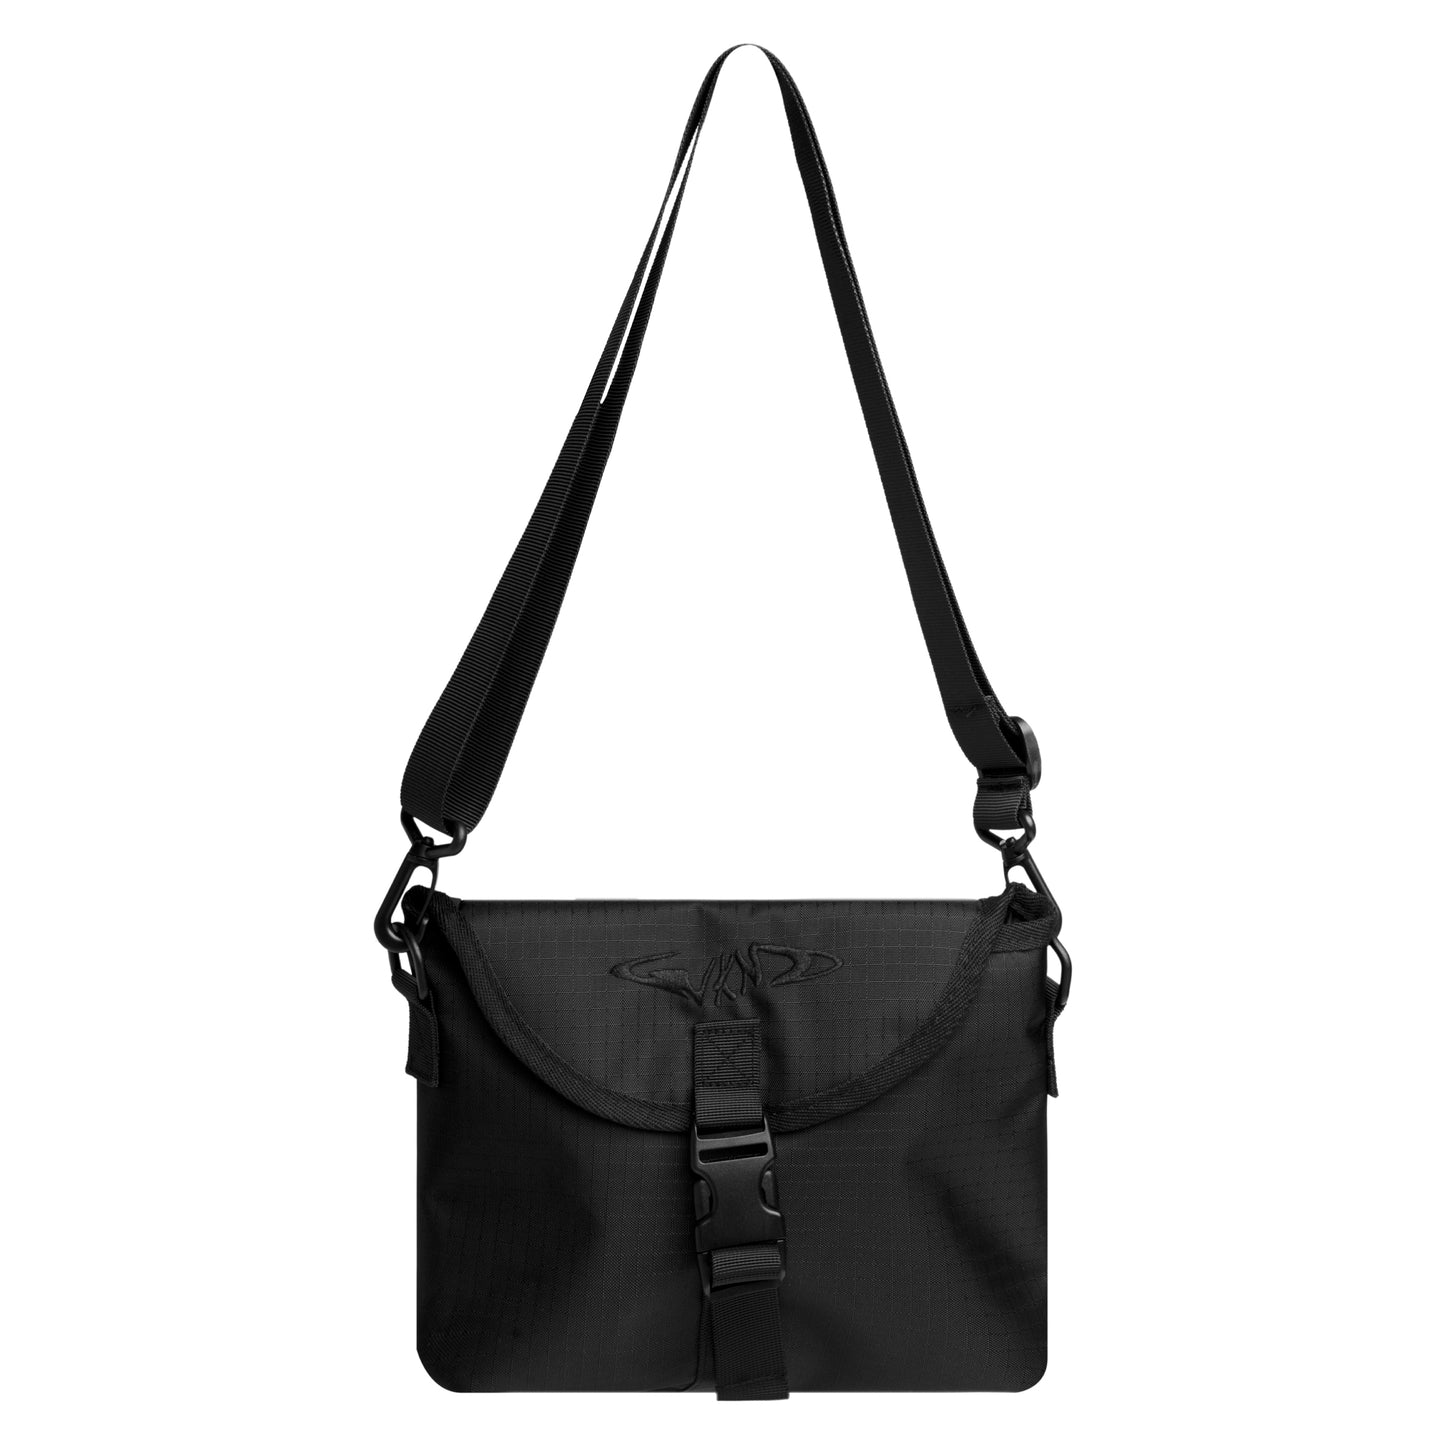 Terry Shoulder Bag, Black